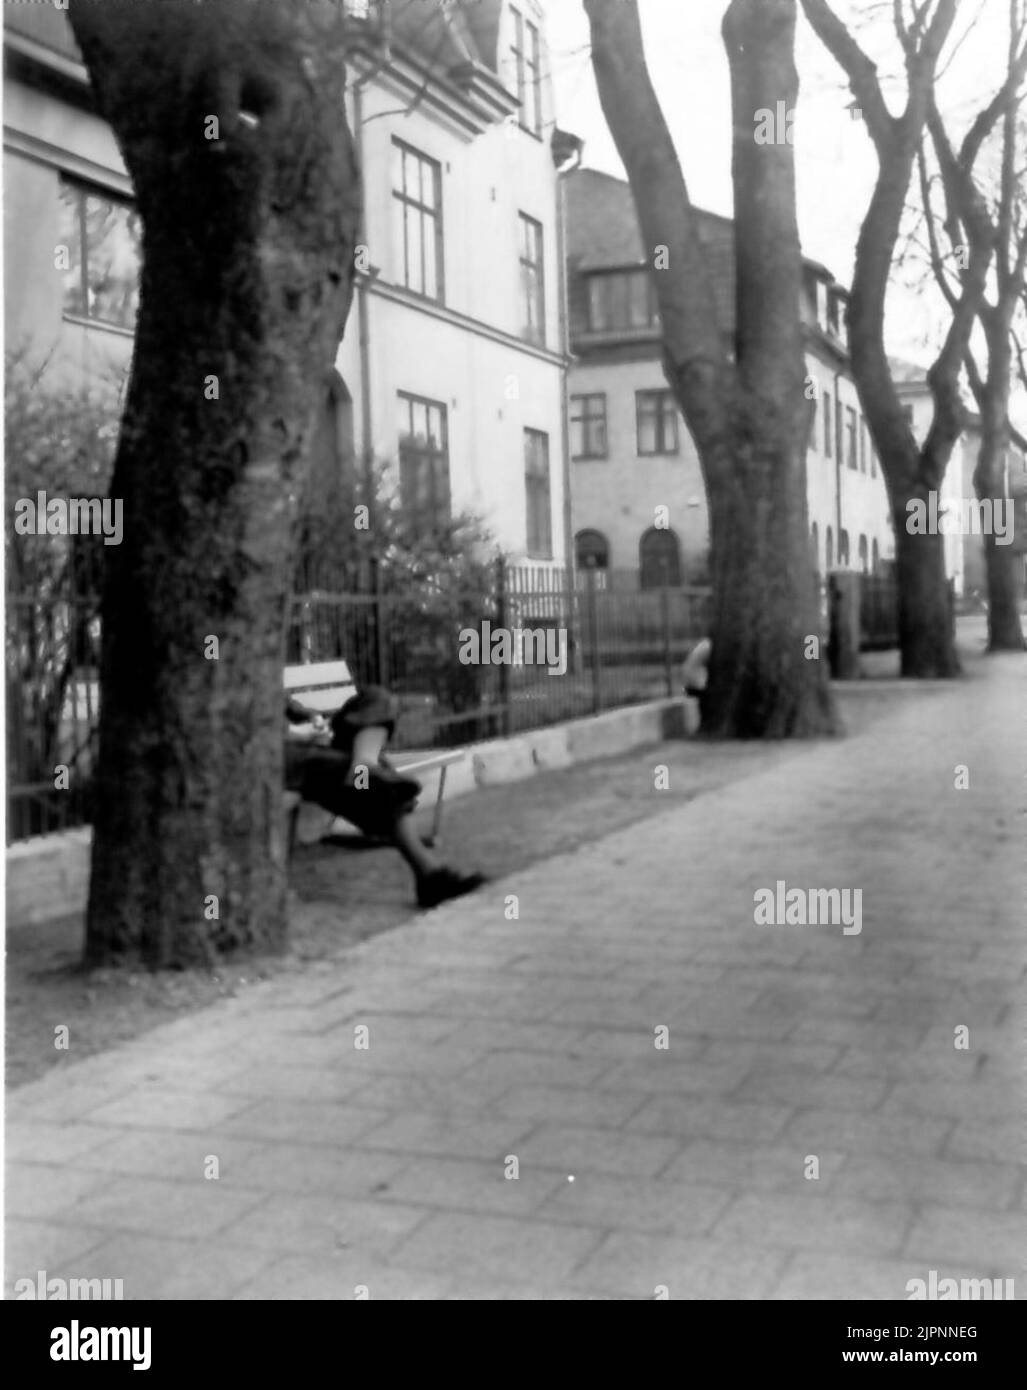 Siesta sur St. Olofsgatan '. De l'exposition' Falköping dans la photo '1952. 'siesta på S:t Olofsgatan'. Fån utställningen 'Falköping i bild' 1952. Banque D'Images